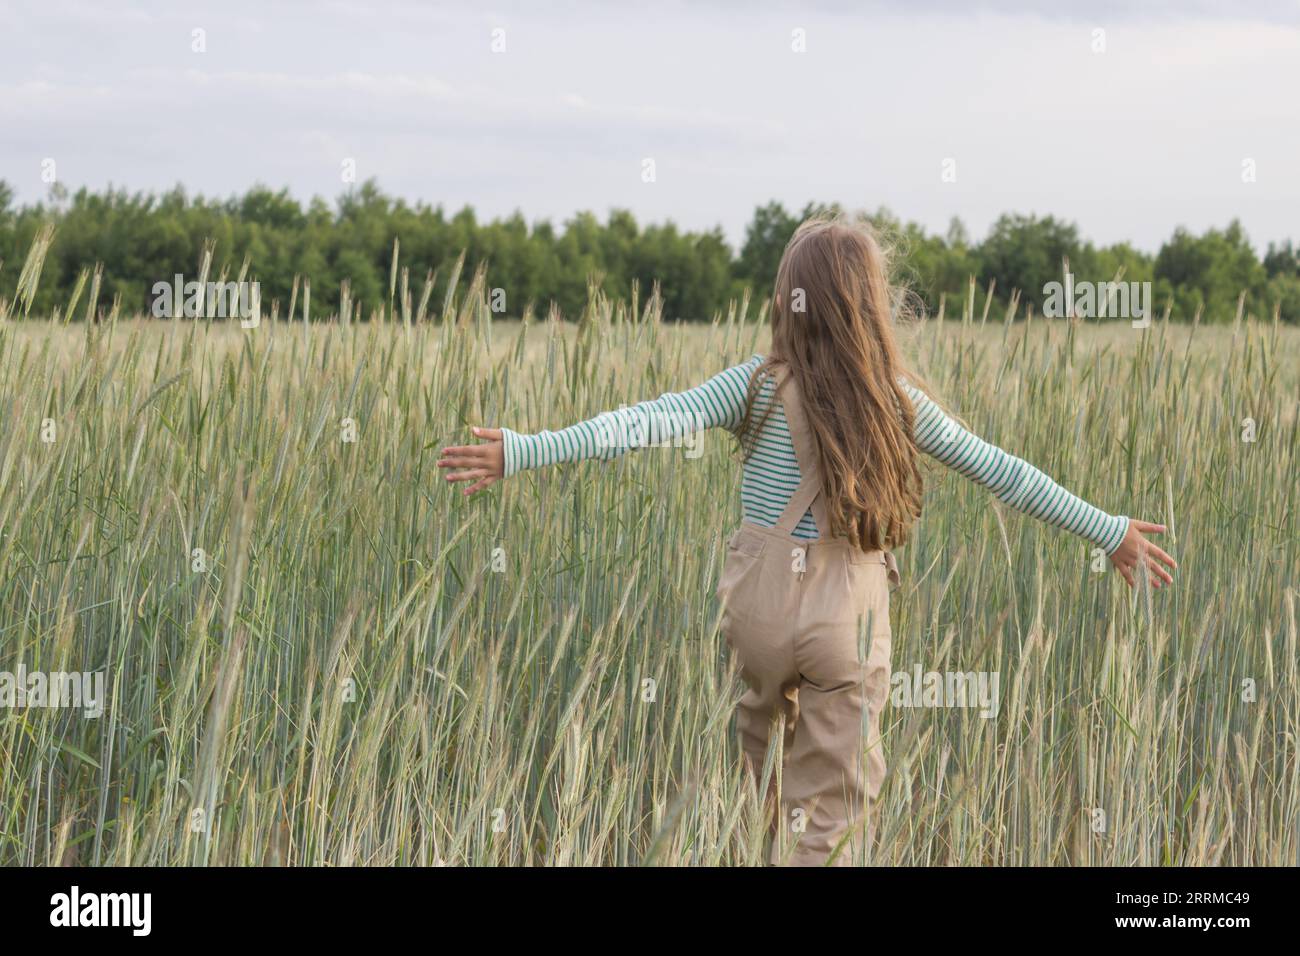 Une fille aux cheveux clairs marche dans le champ avec ses bras écartés dans différentes directions, touchant les épis de maïs. Vue de l'arrière. Banque D'Images